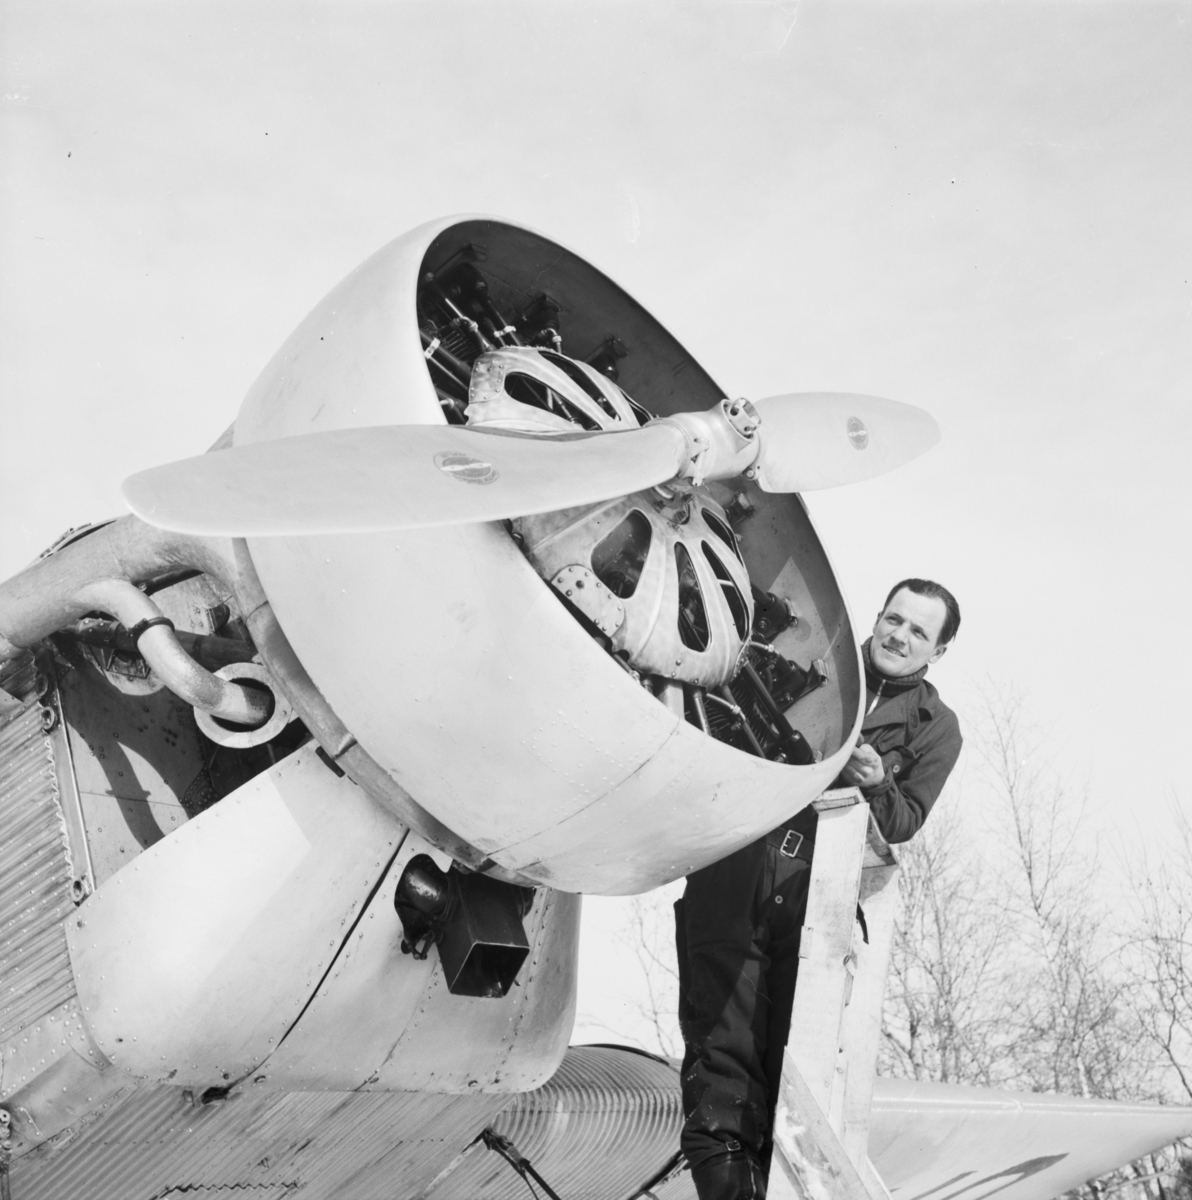 Motorarbete på flygplan Junkers F-13 vid F 19, Svenska frivilligkåren i Finland. Mekaniker Sture Krook står på en stege vid motorn.